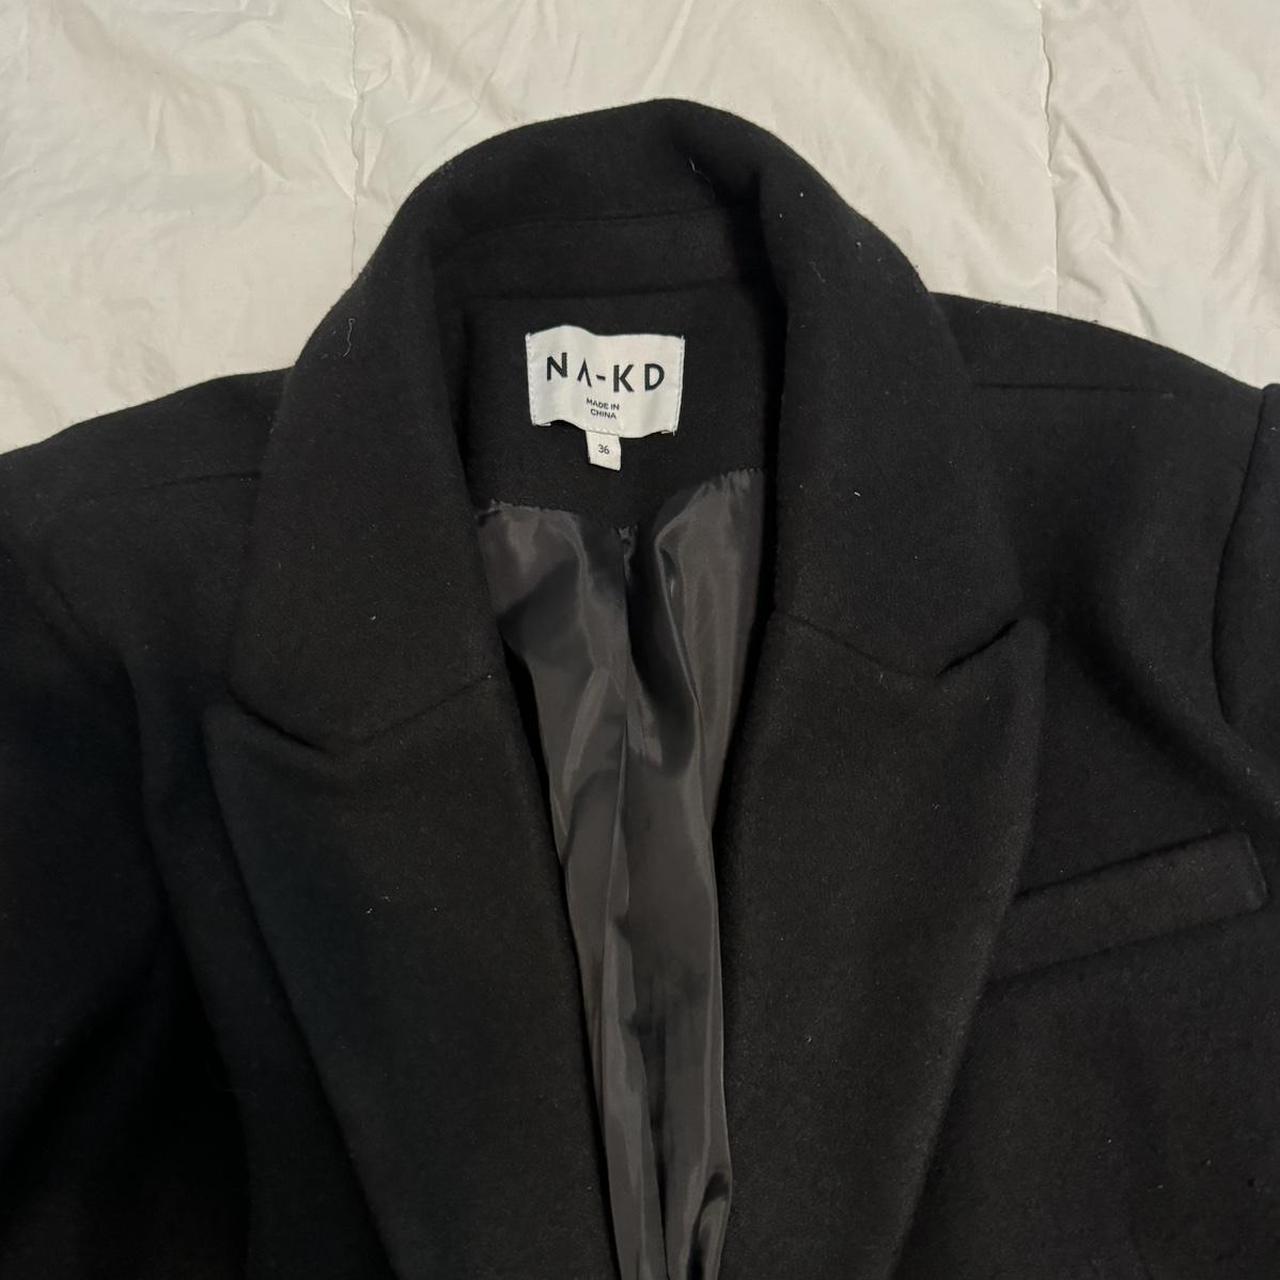 NaKd black long coat. Too long for a 5’4” Worn 3... - Depop